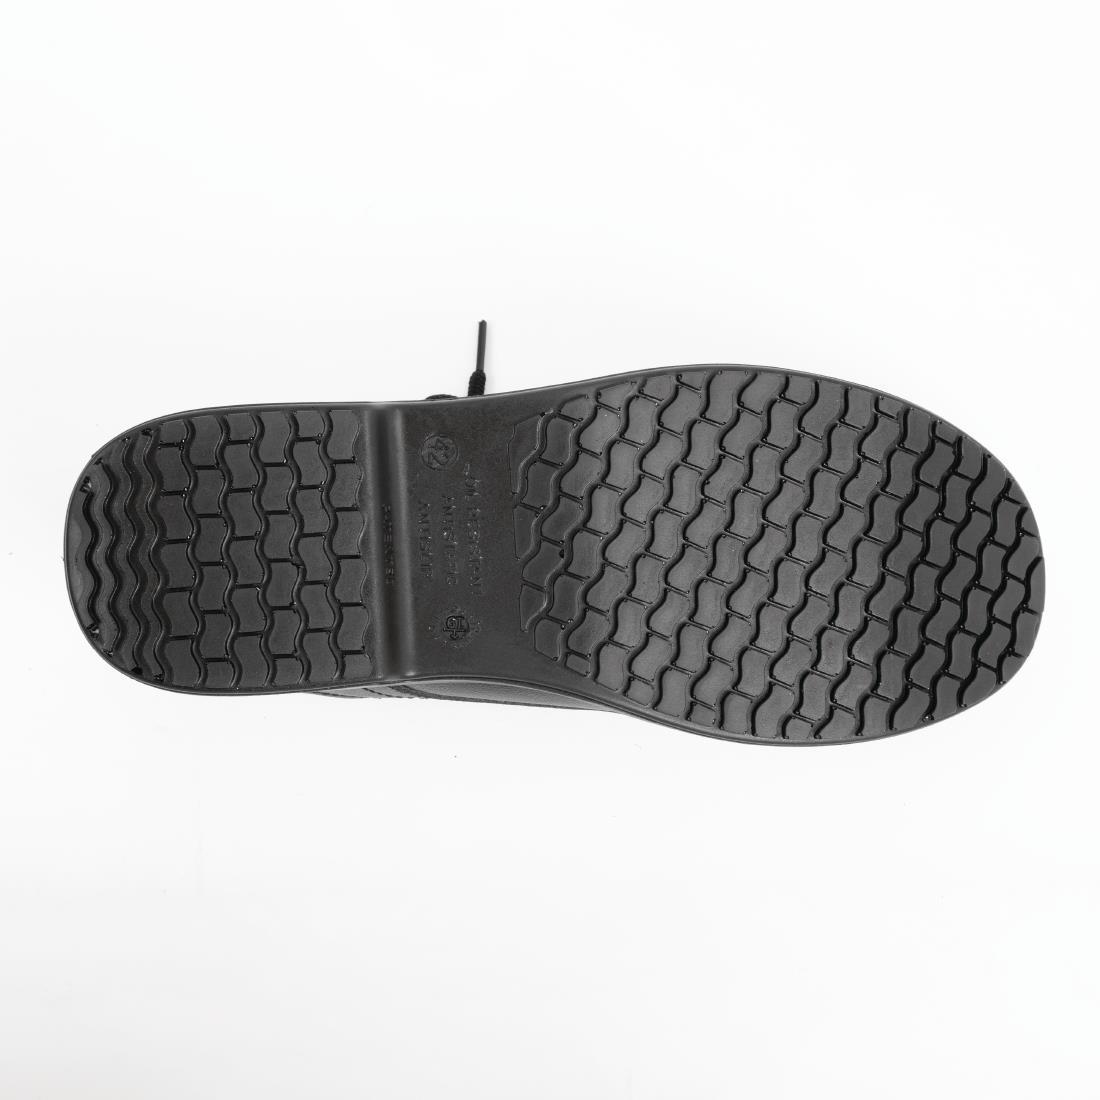 Slipbuster Basic Toe Cap Safety Shoes Black 42 - BB497-42  - 2